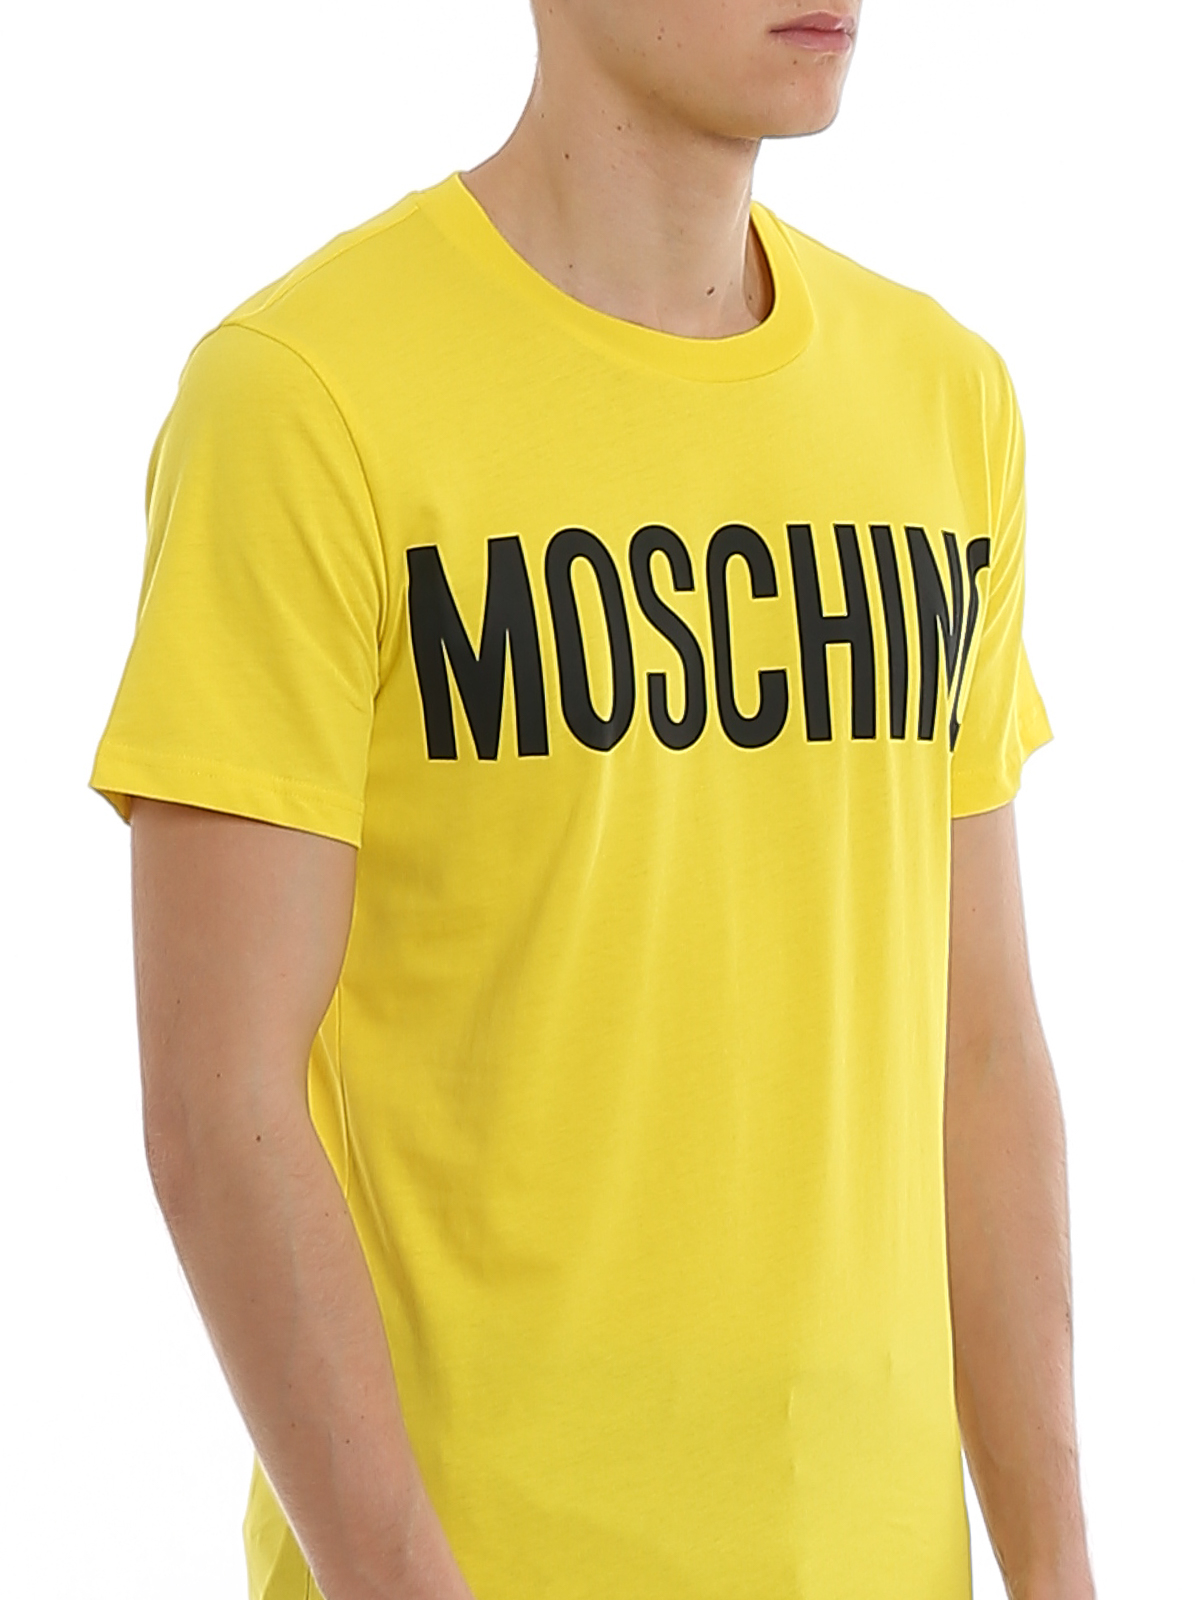 Tシャツ Moschino - Tシャツ - イエロー - 70520401031 | iKRIX.com